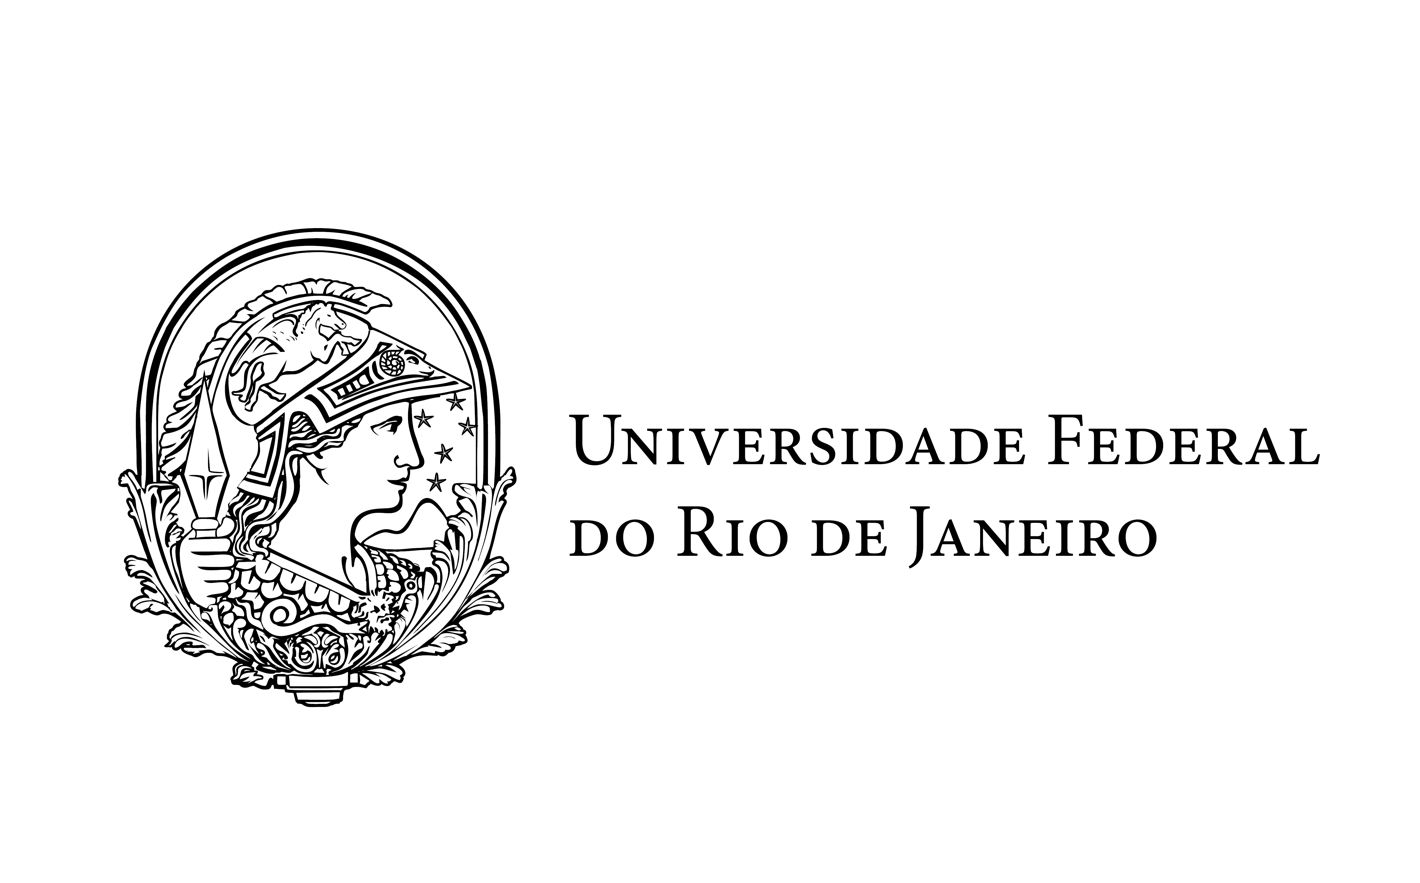 Instituto Federal de Educação, Ciência e Tecnologia do Rio de Janeiro - IFRJ  no LinkedIn: #graduaçãoifrj #soumaisifrj #sisu #enem2022